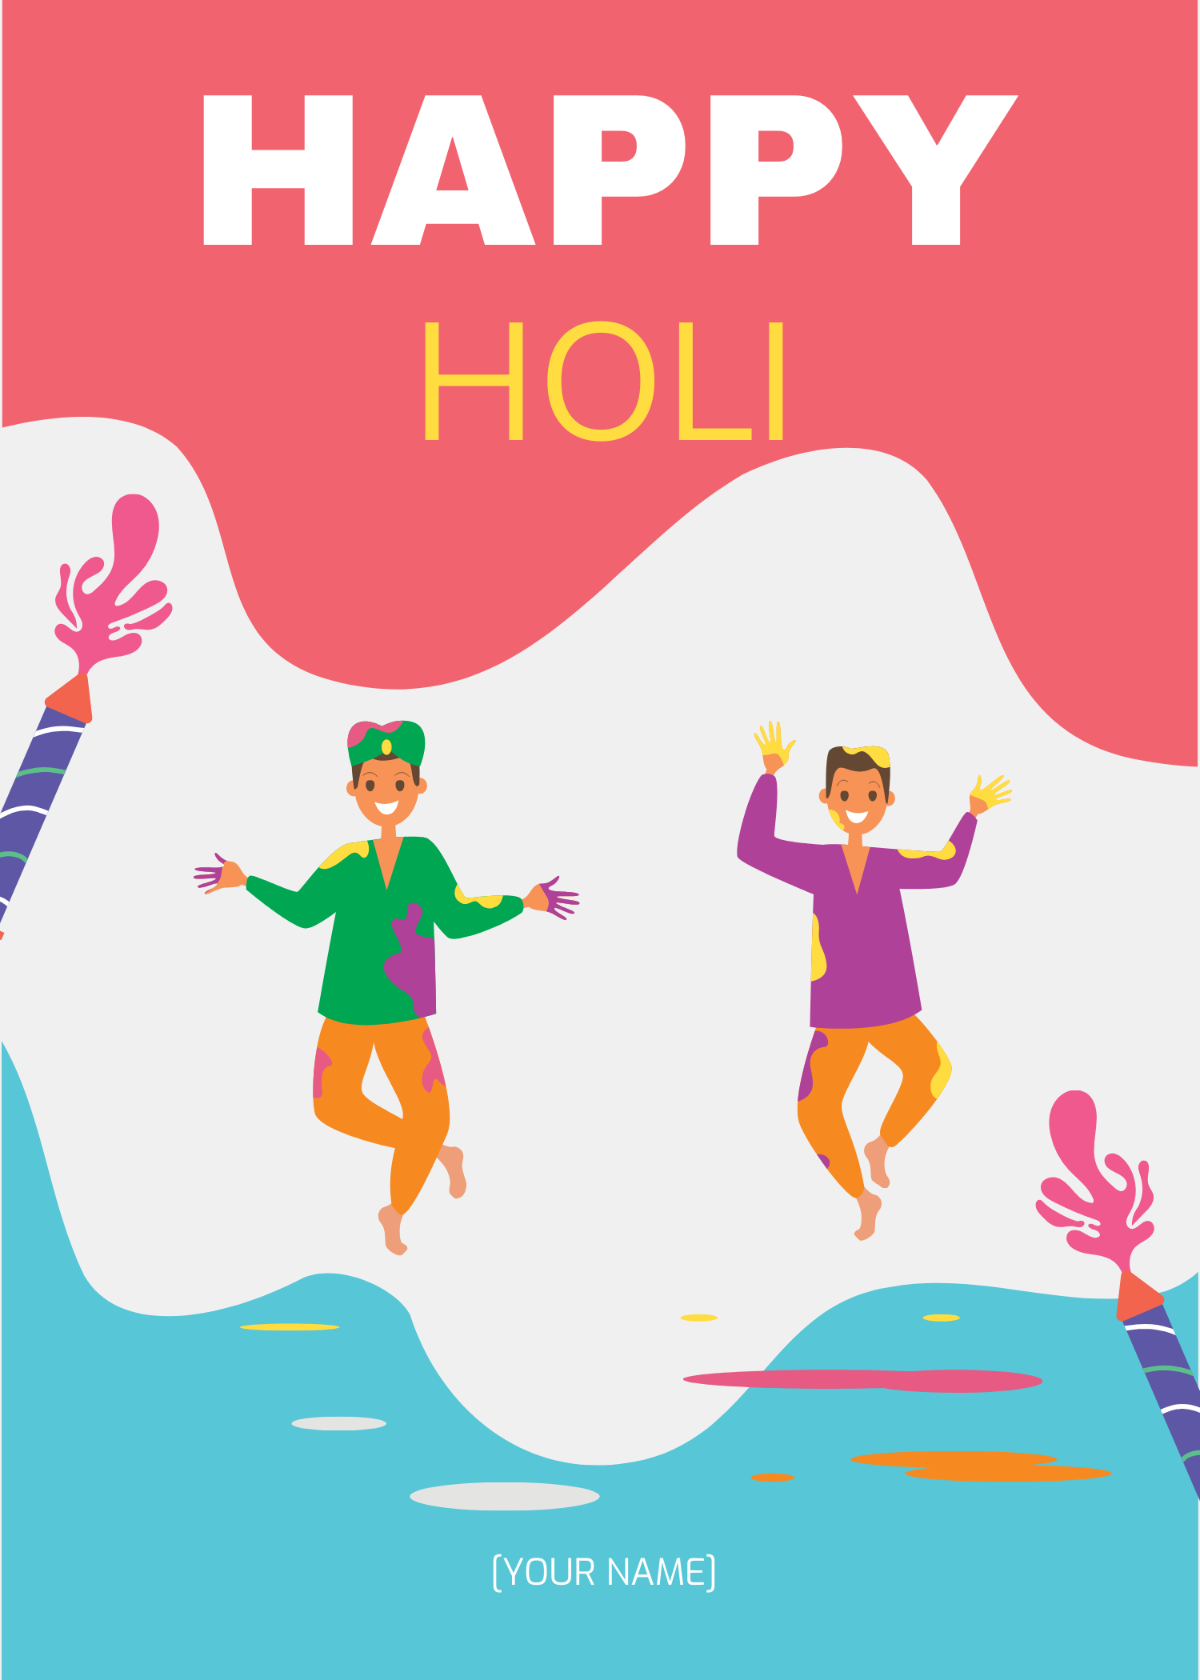 Happy Holi Wishes GIF Template